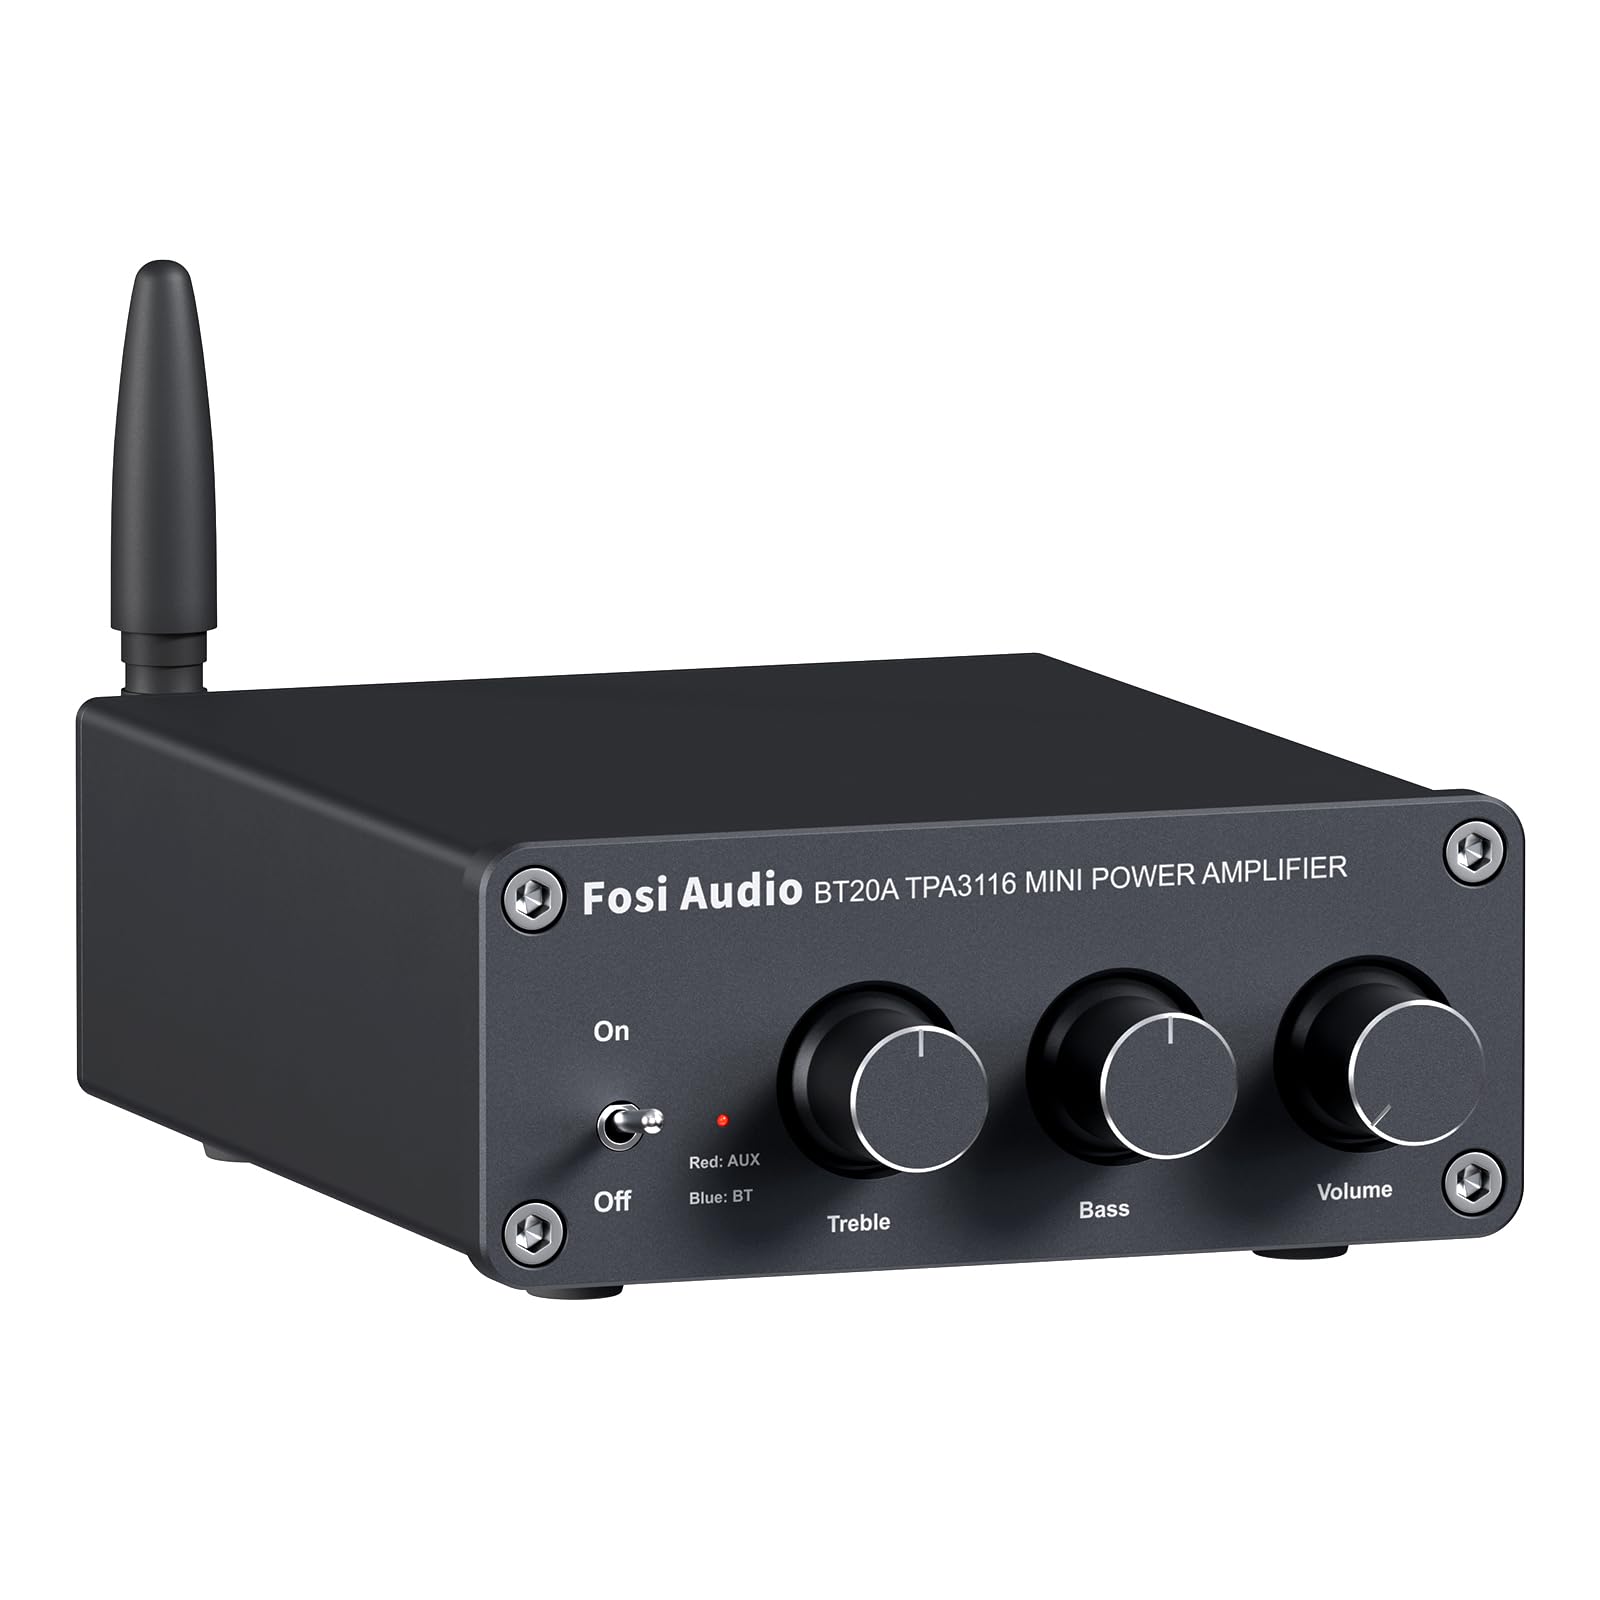  Fosi Audio BT20A Bluetooth 5.0 Audio Estéreo Amplificador Receptor de 2 Canales Mini Hi-Fi Clase D Amplificador Integrado 2.0 CH para Altavoces Domésticos 100W x 2 con Control de Graves y Agudos...